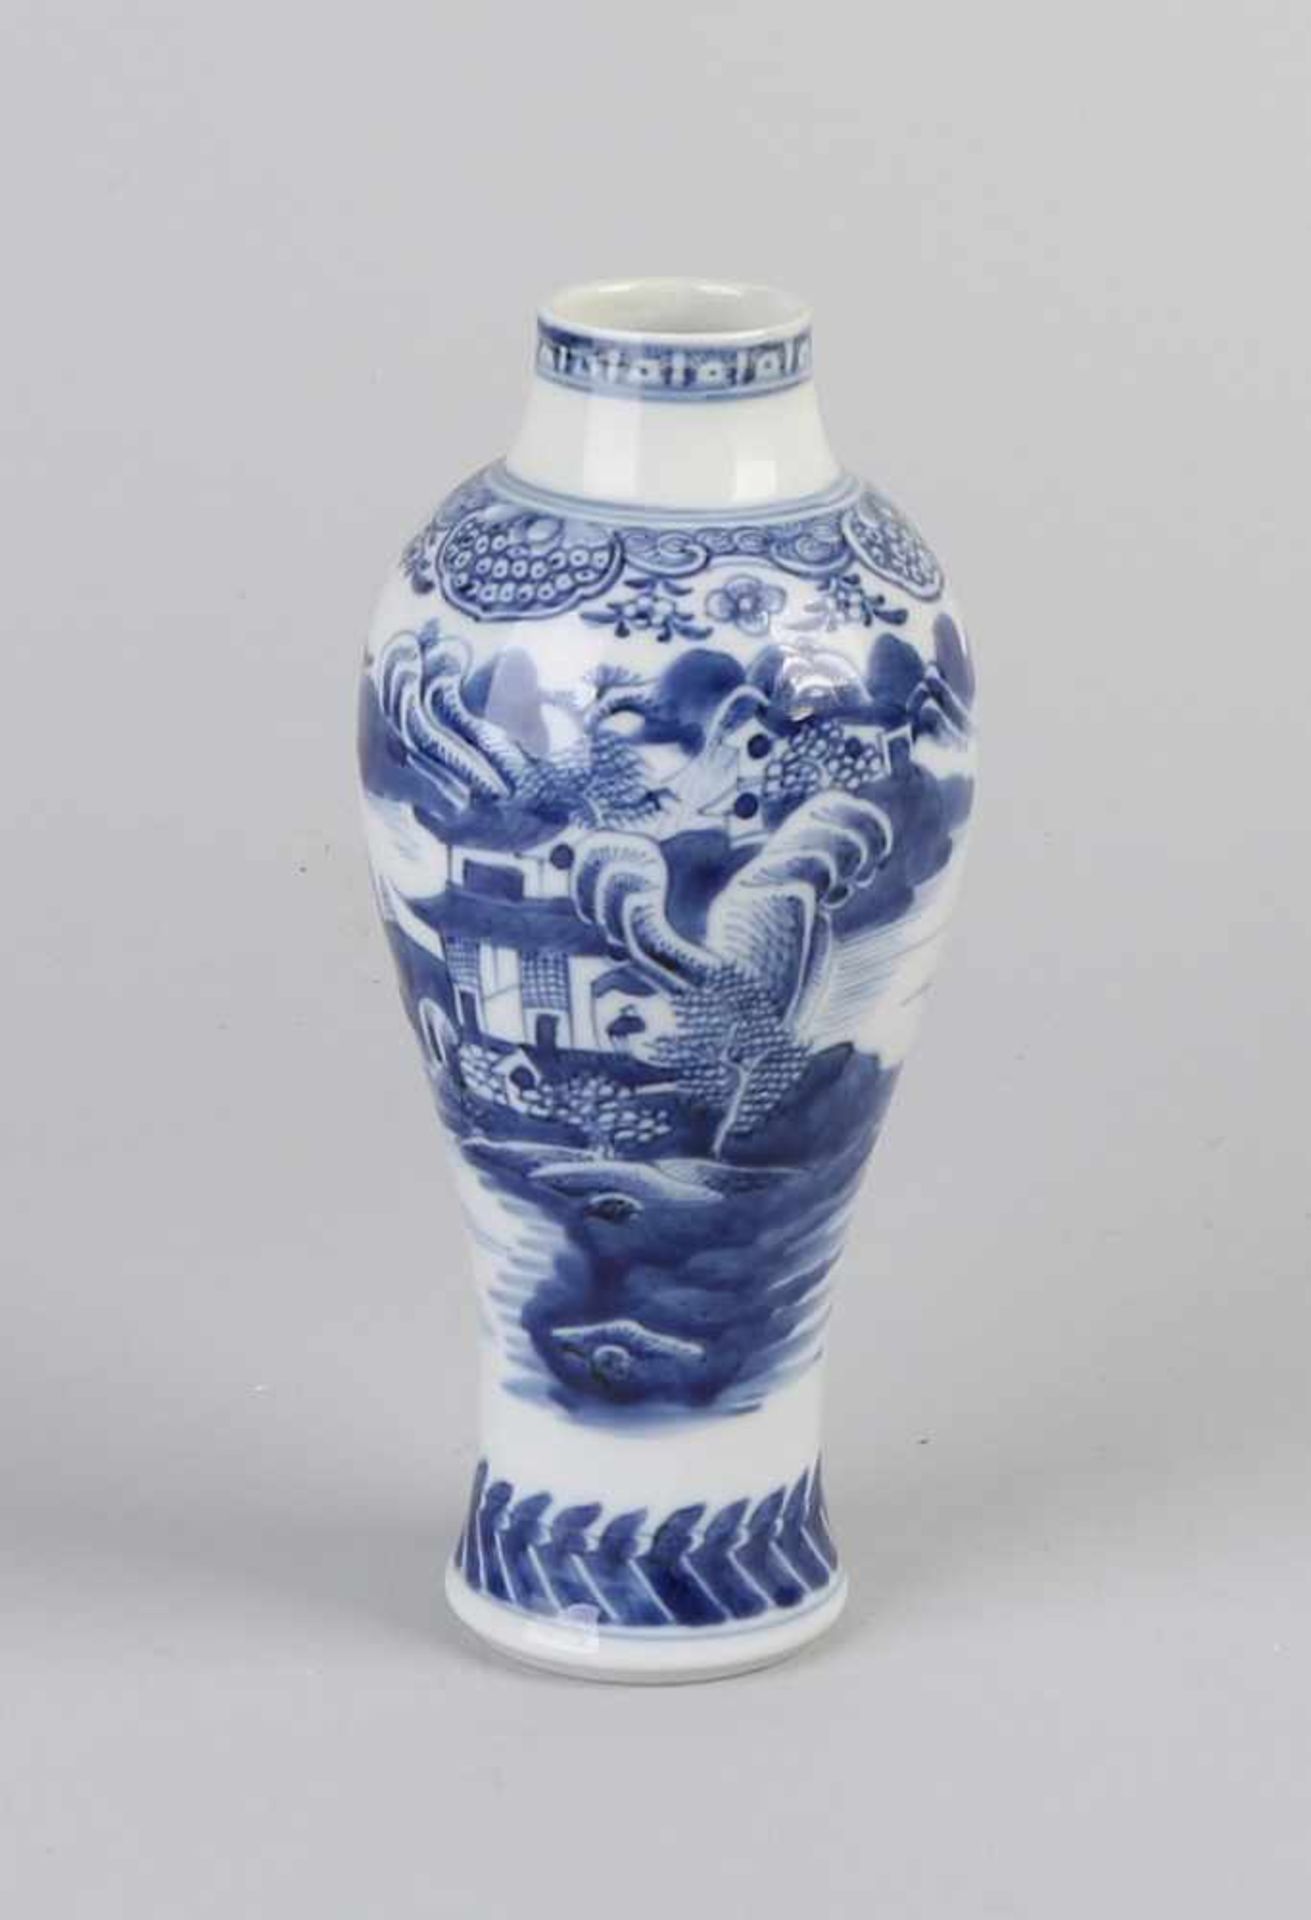 Queng Lungenvase aus chinesischem Porzellan aus dem 18. Jahrhundert mit Landschaftsdekoration auf